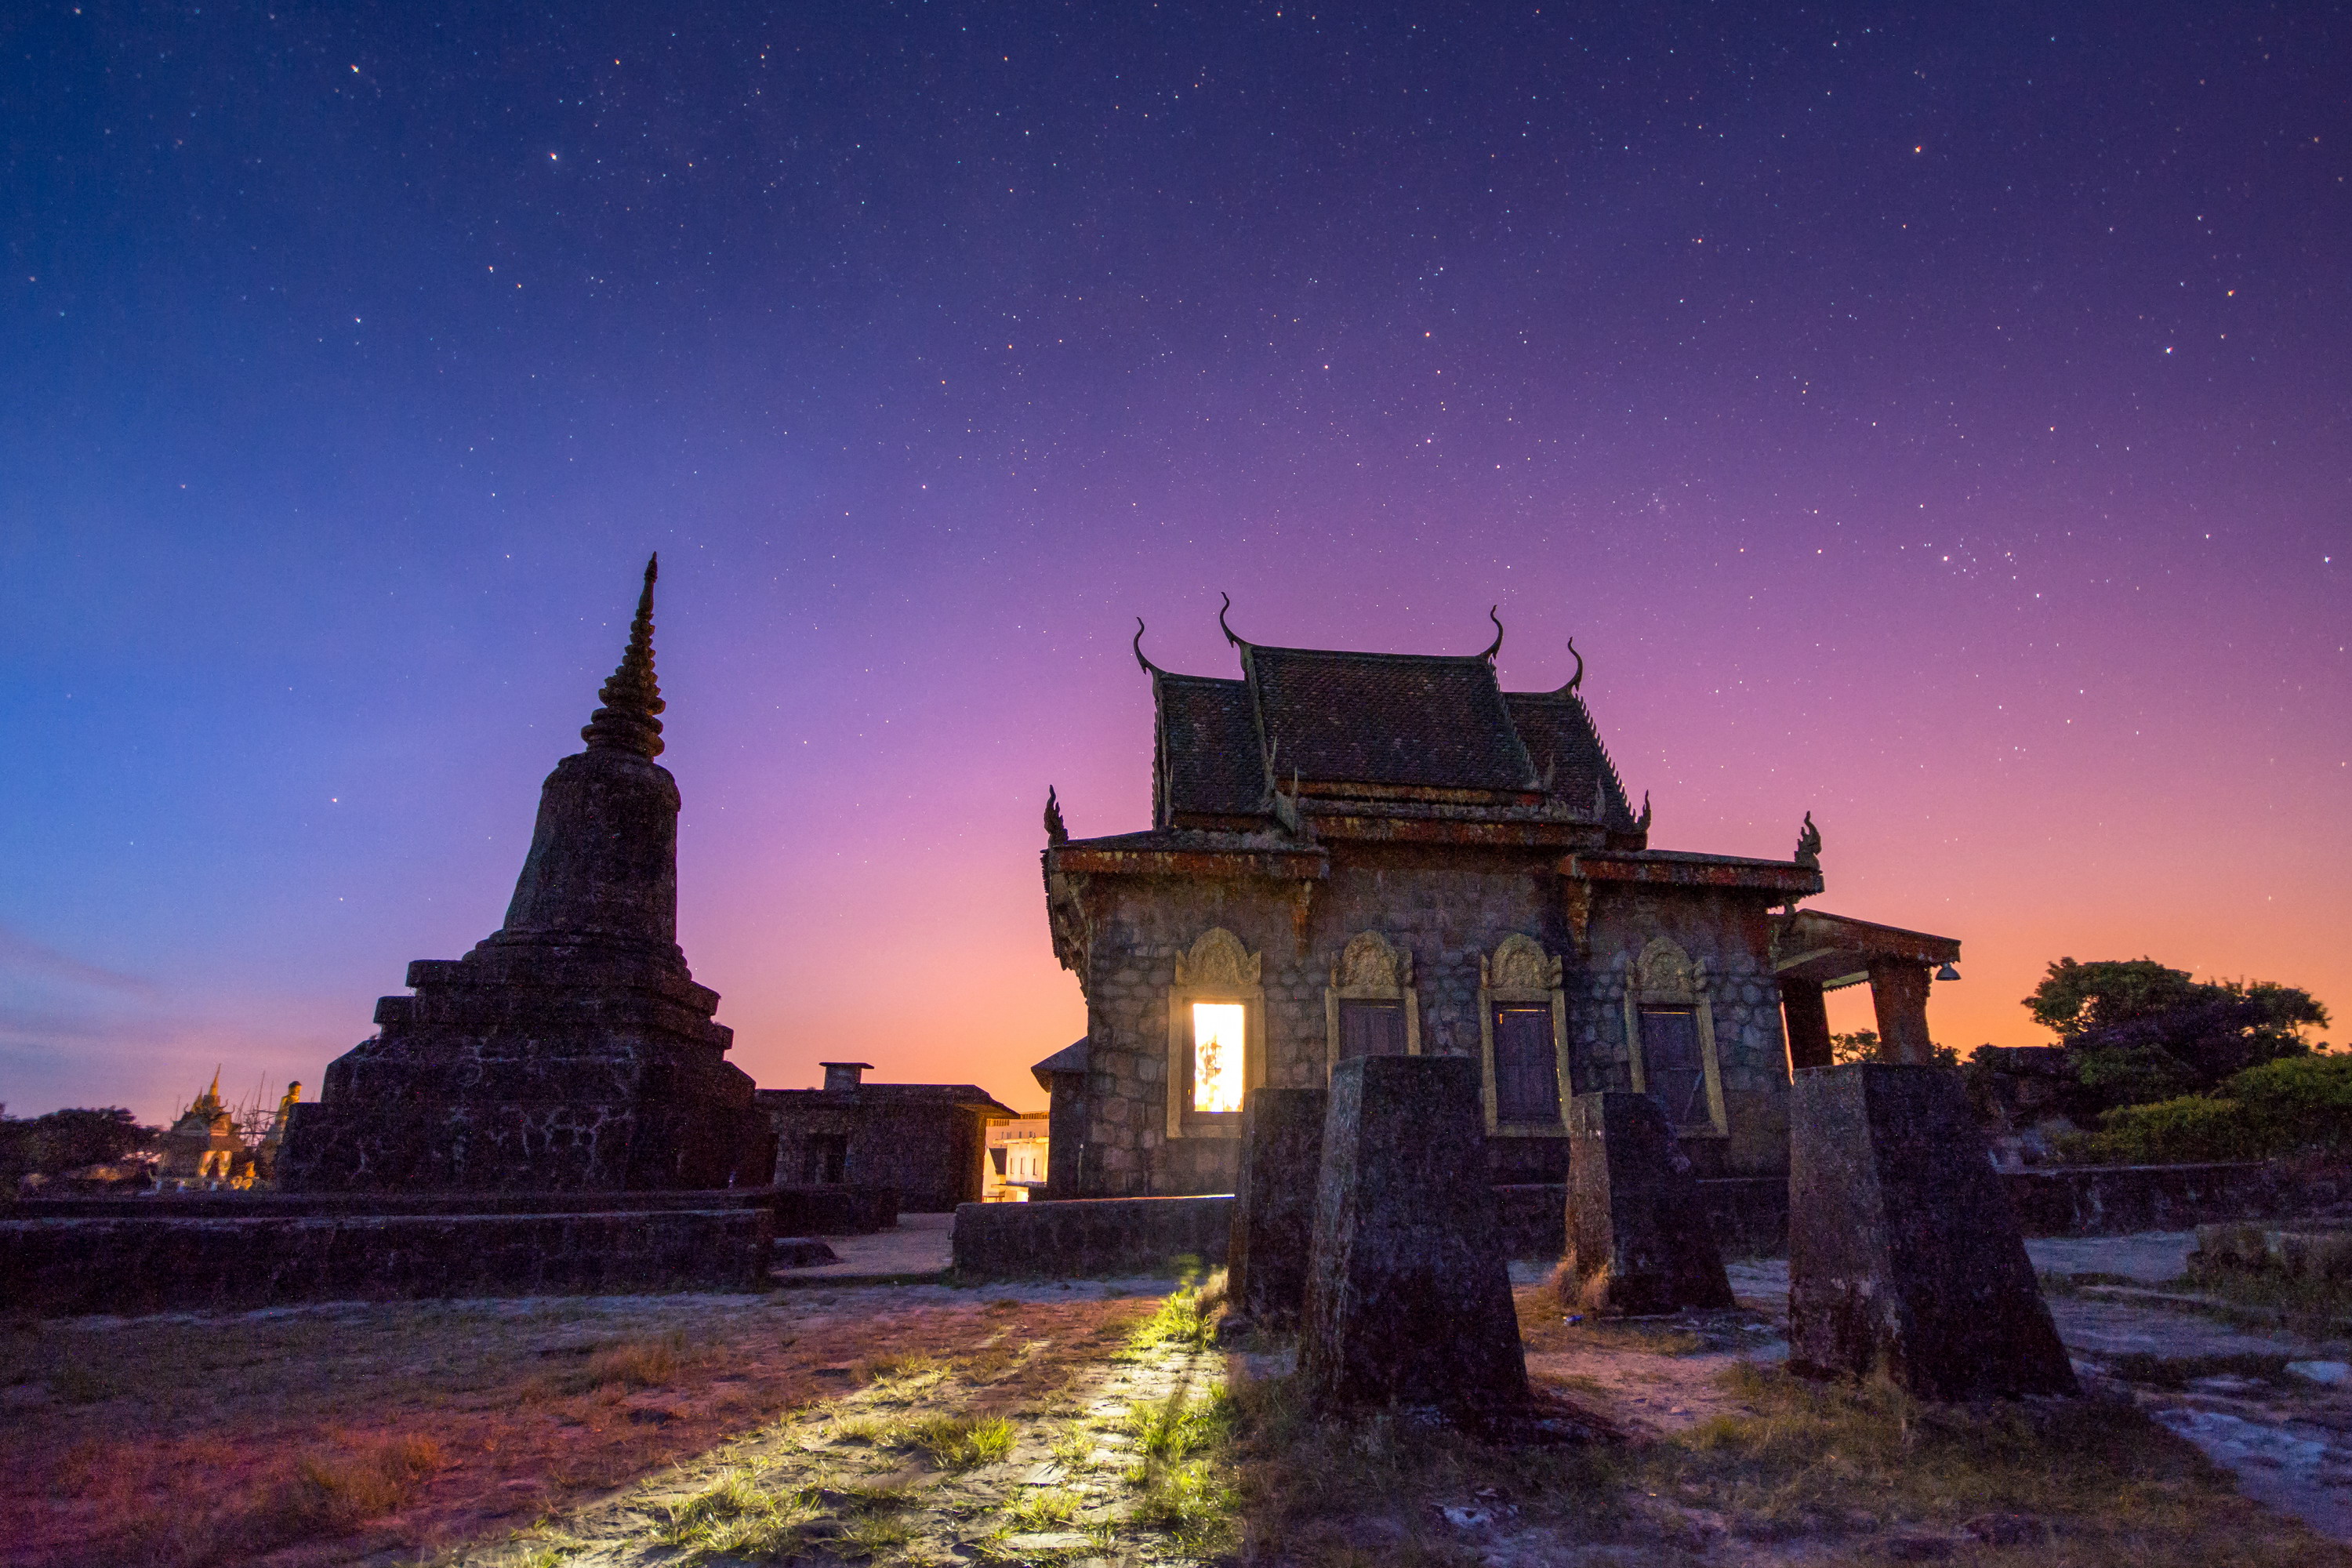 Cao nguyên Bokor, chùa Năm Thuyền